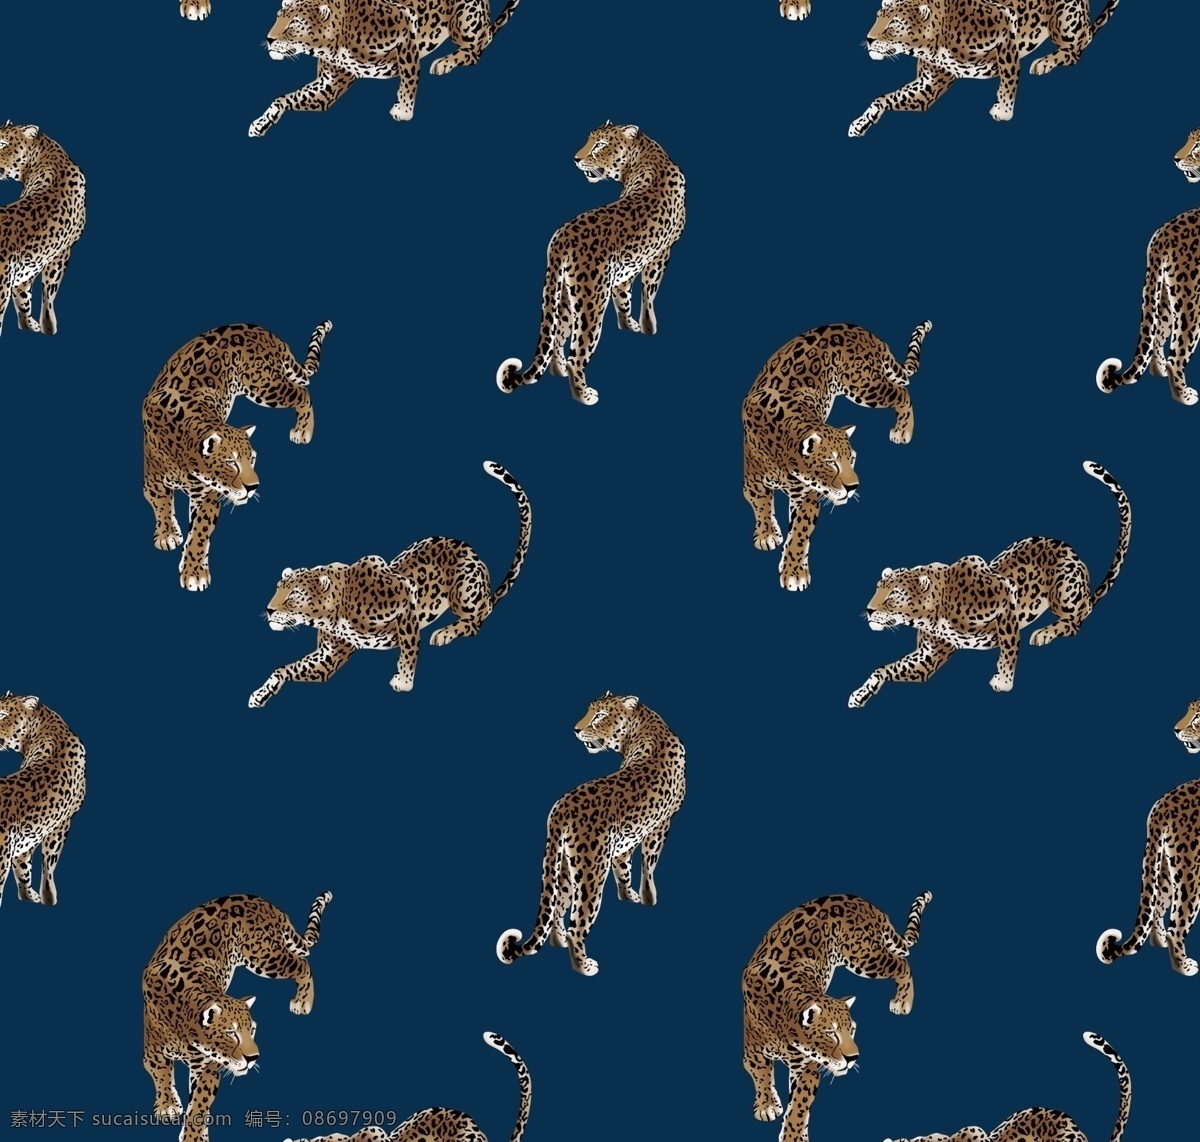 老虎 豹子图片 动物 大牌 豹子 印花 服装设计